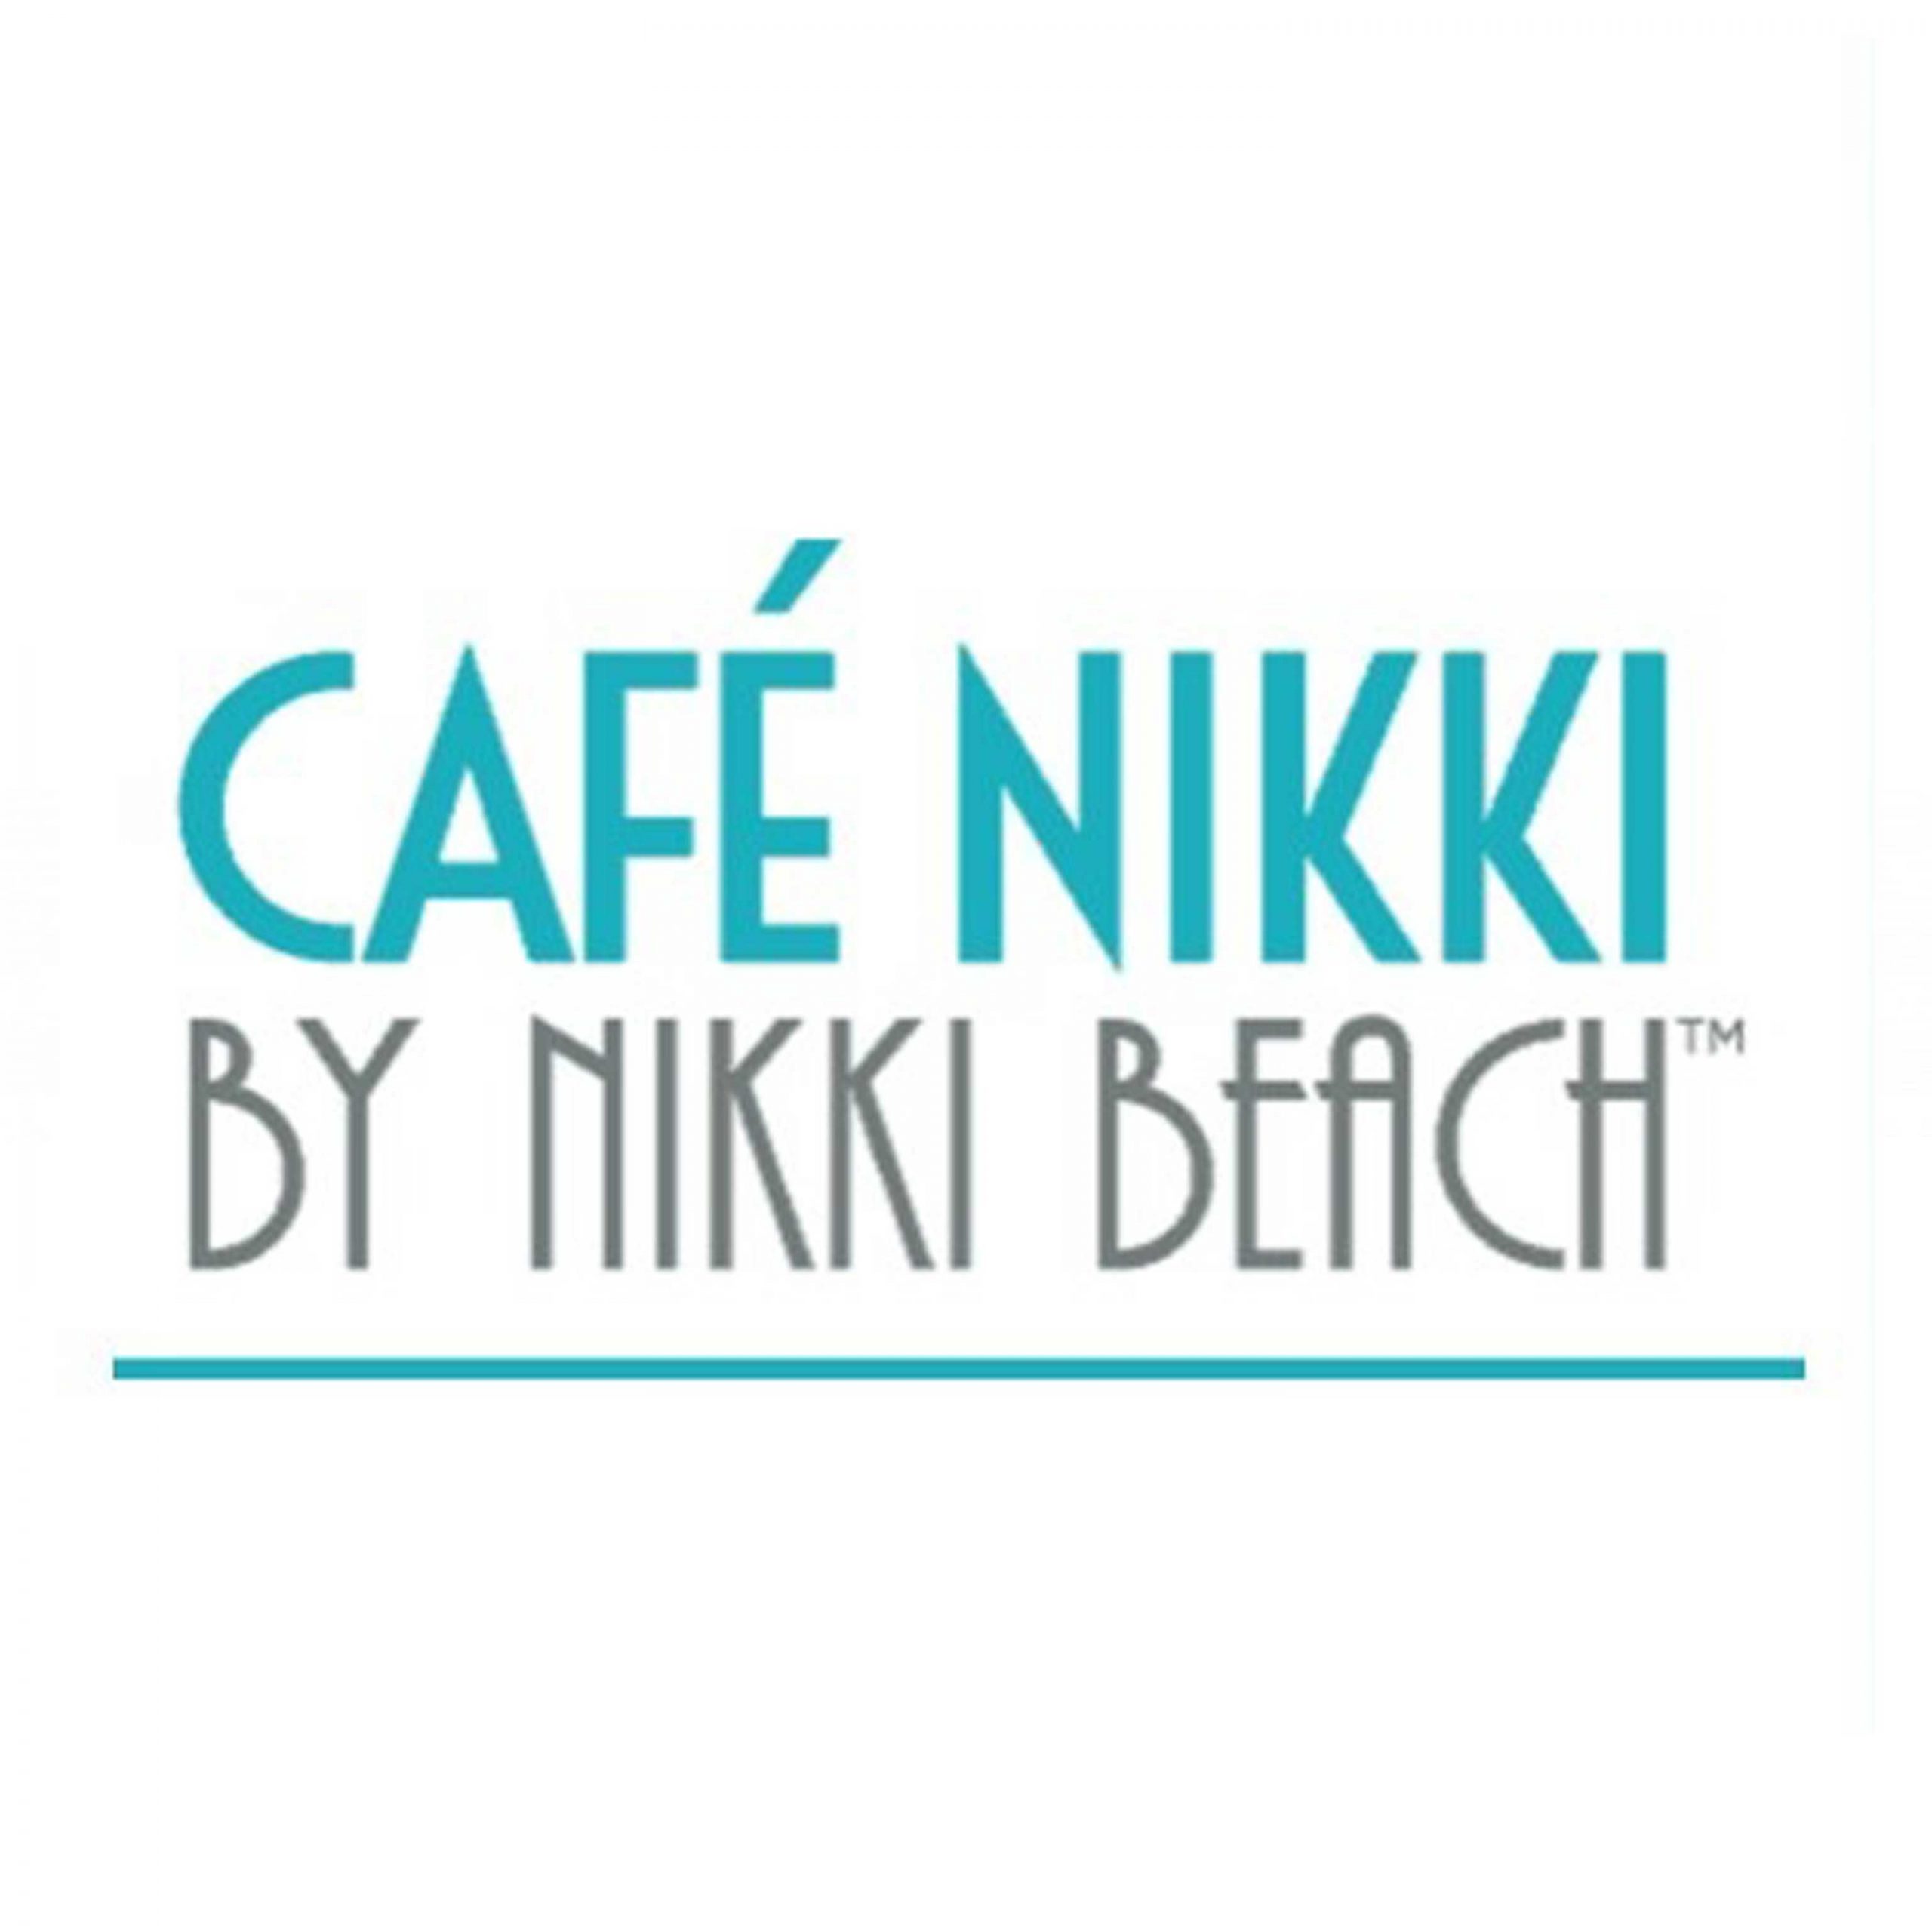 Cafe Nikki in Jumeirah